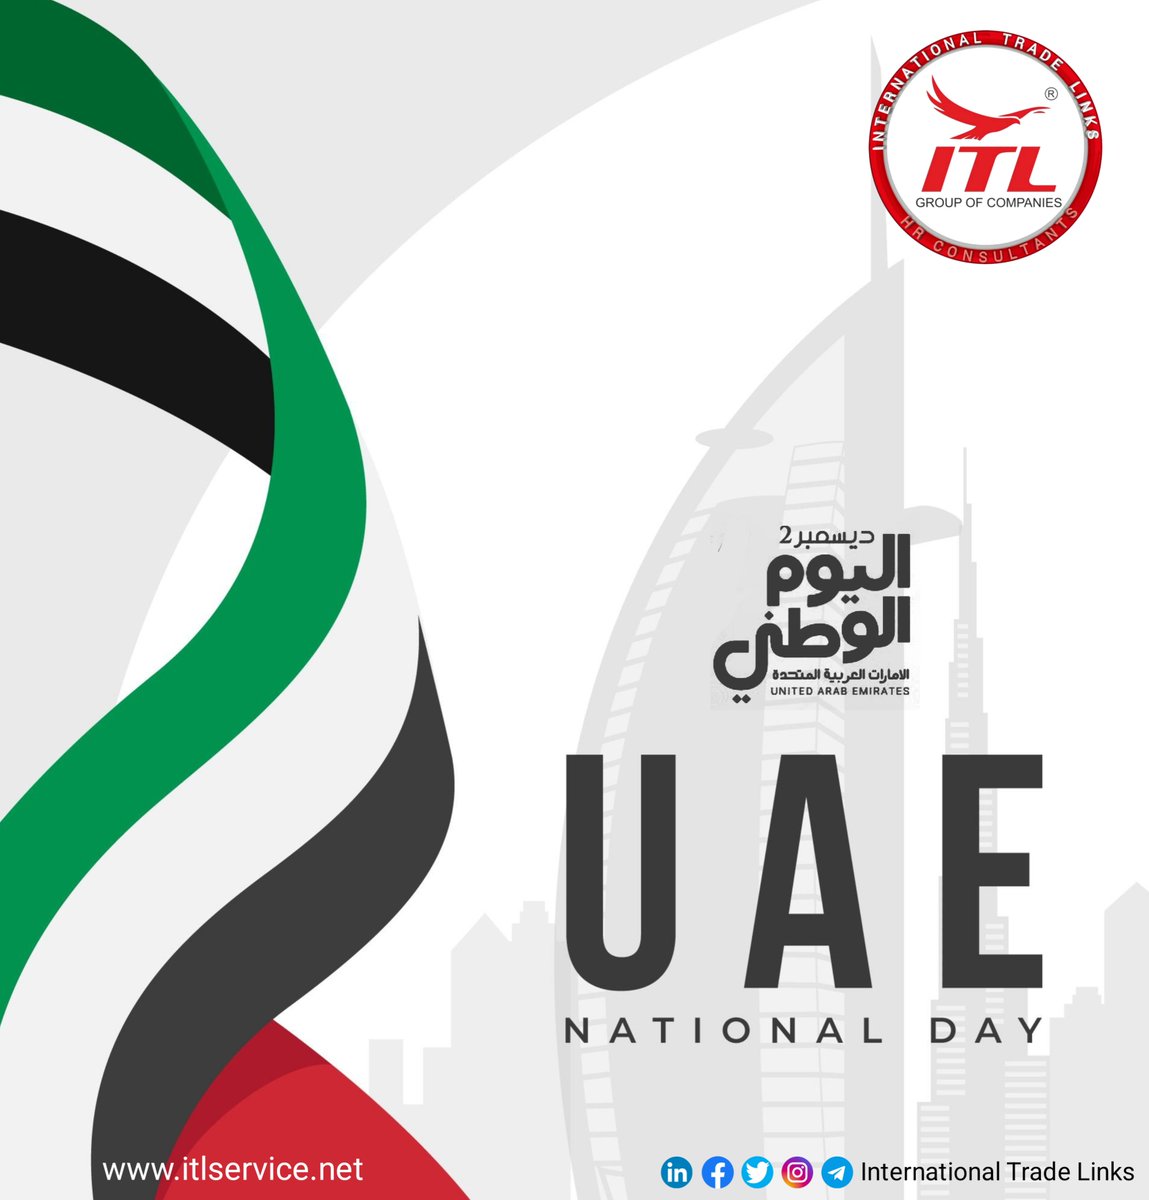 HAPPY UAE NATIONAL DAY
#uaenationalday #uaeu #مدينة_العين #mydubai #abudhabifood #uae_innovates #uaehealthmovement #abudhabifashion #uaefitness #dubaitag #myuae #ITL #itl #internationaltradelinks